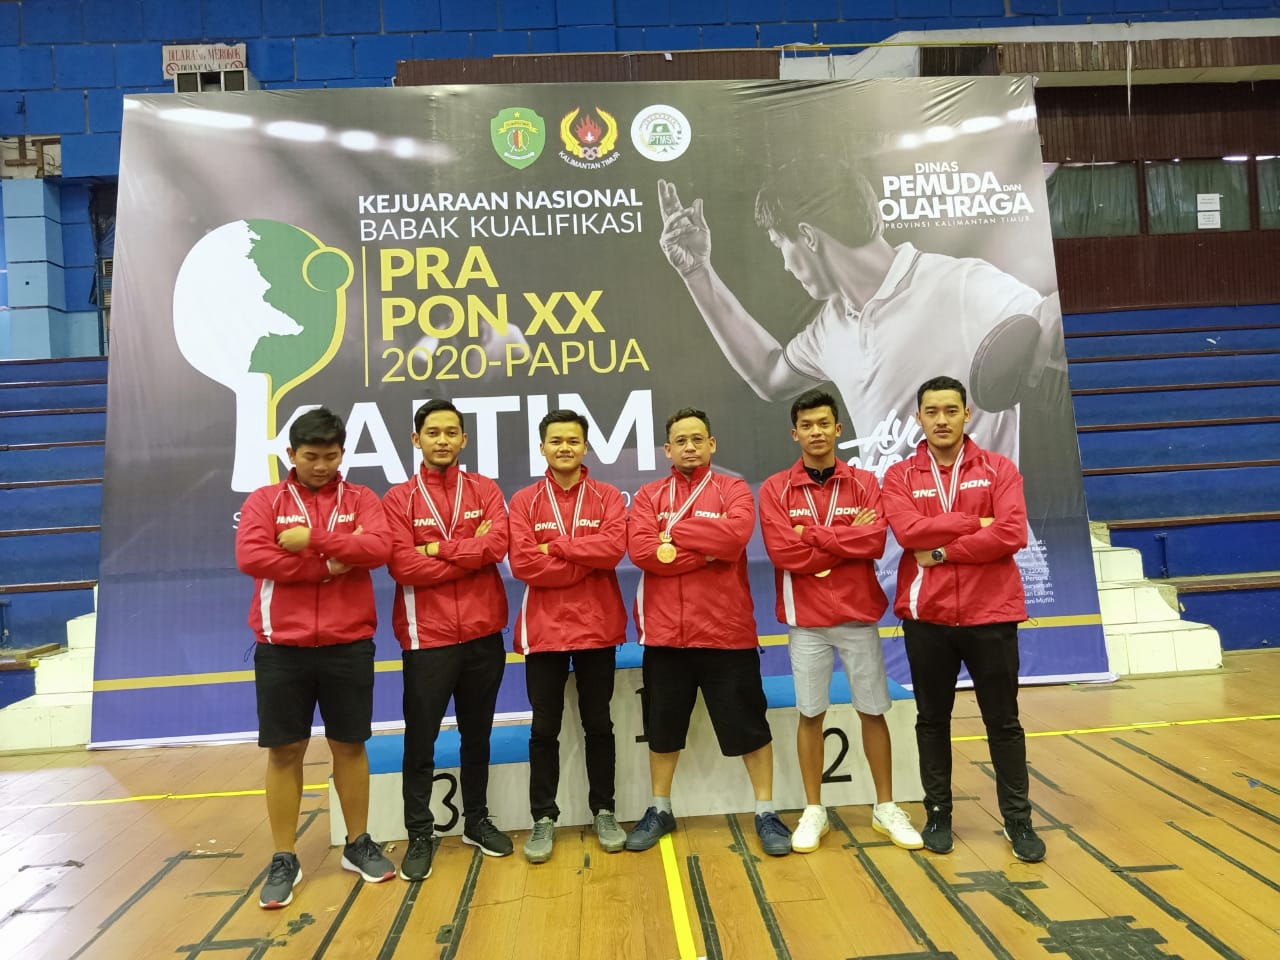 Foto Kejuaraan Nasional Babak Kualifikasi Pra PON XX 2020-Papua